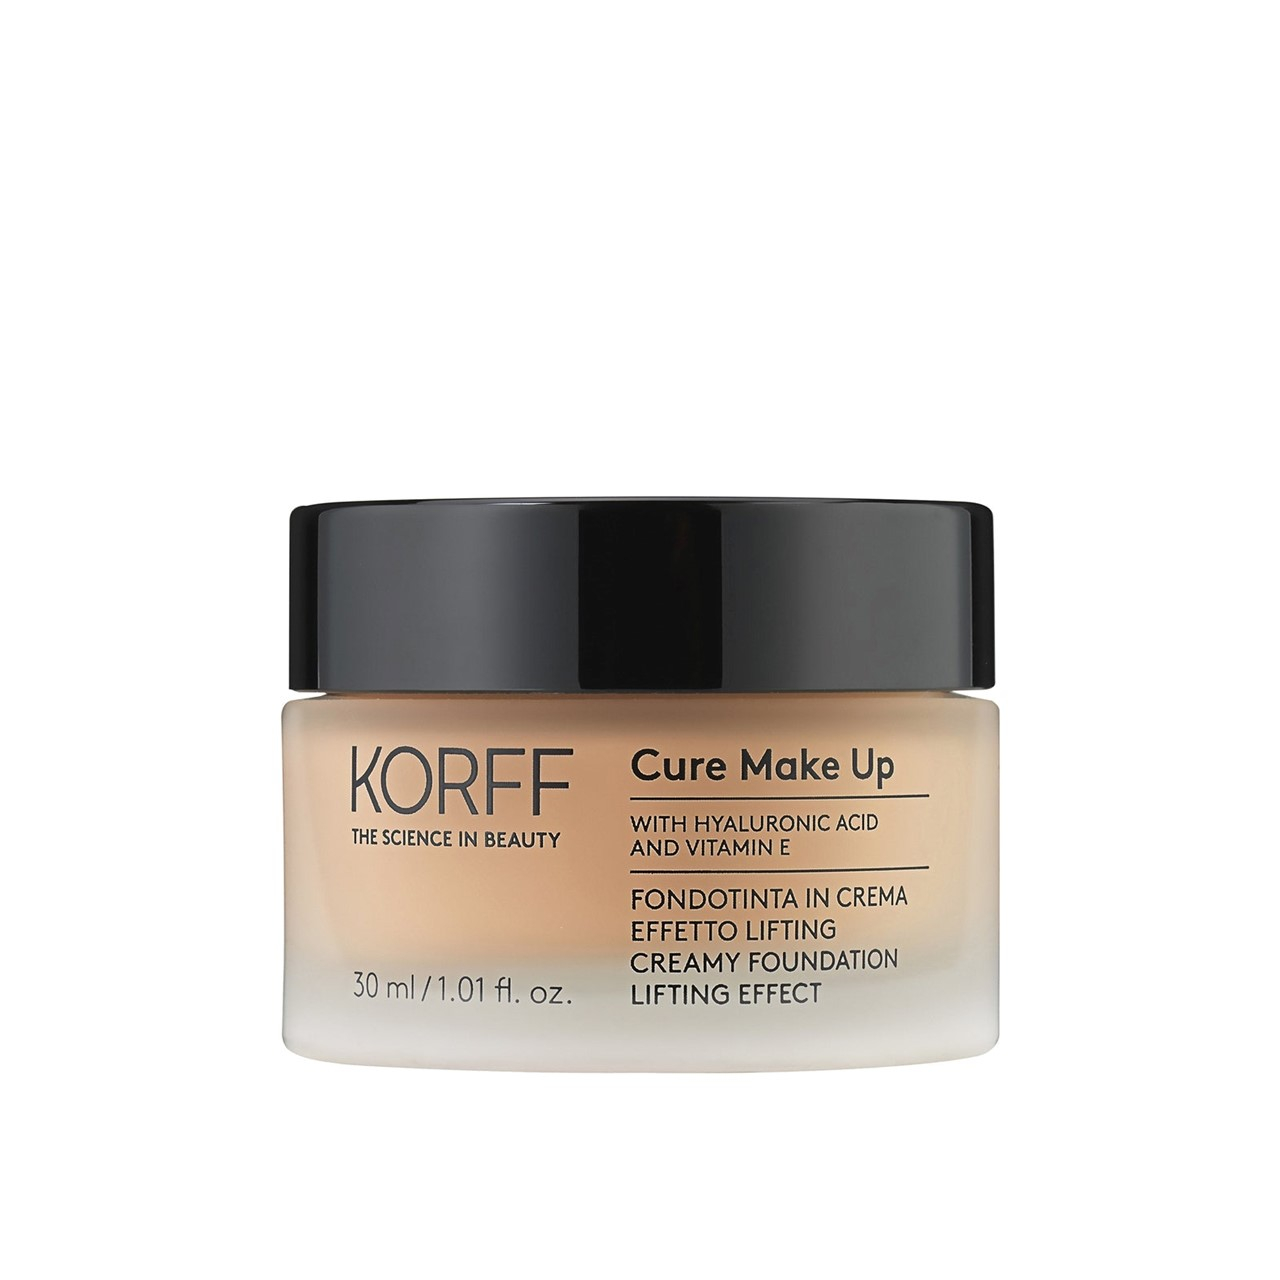 Korff Cure Make-Up Creamy Foundation Lifting Effect 05 30ml (1.01 fl oz)